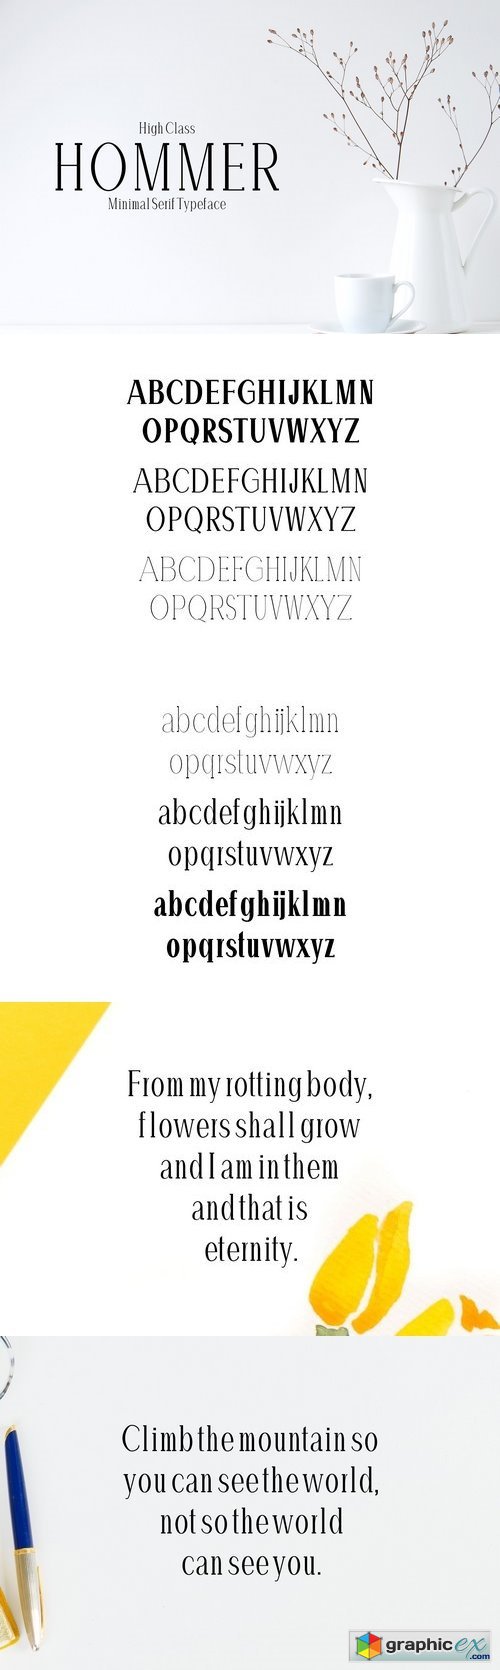 Hommer Minimal Serif 6 Font Family